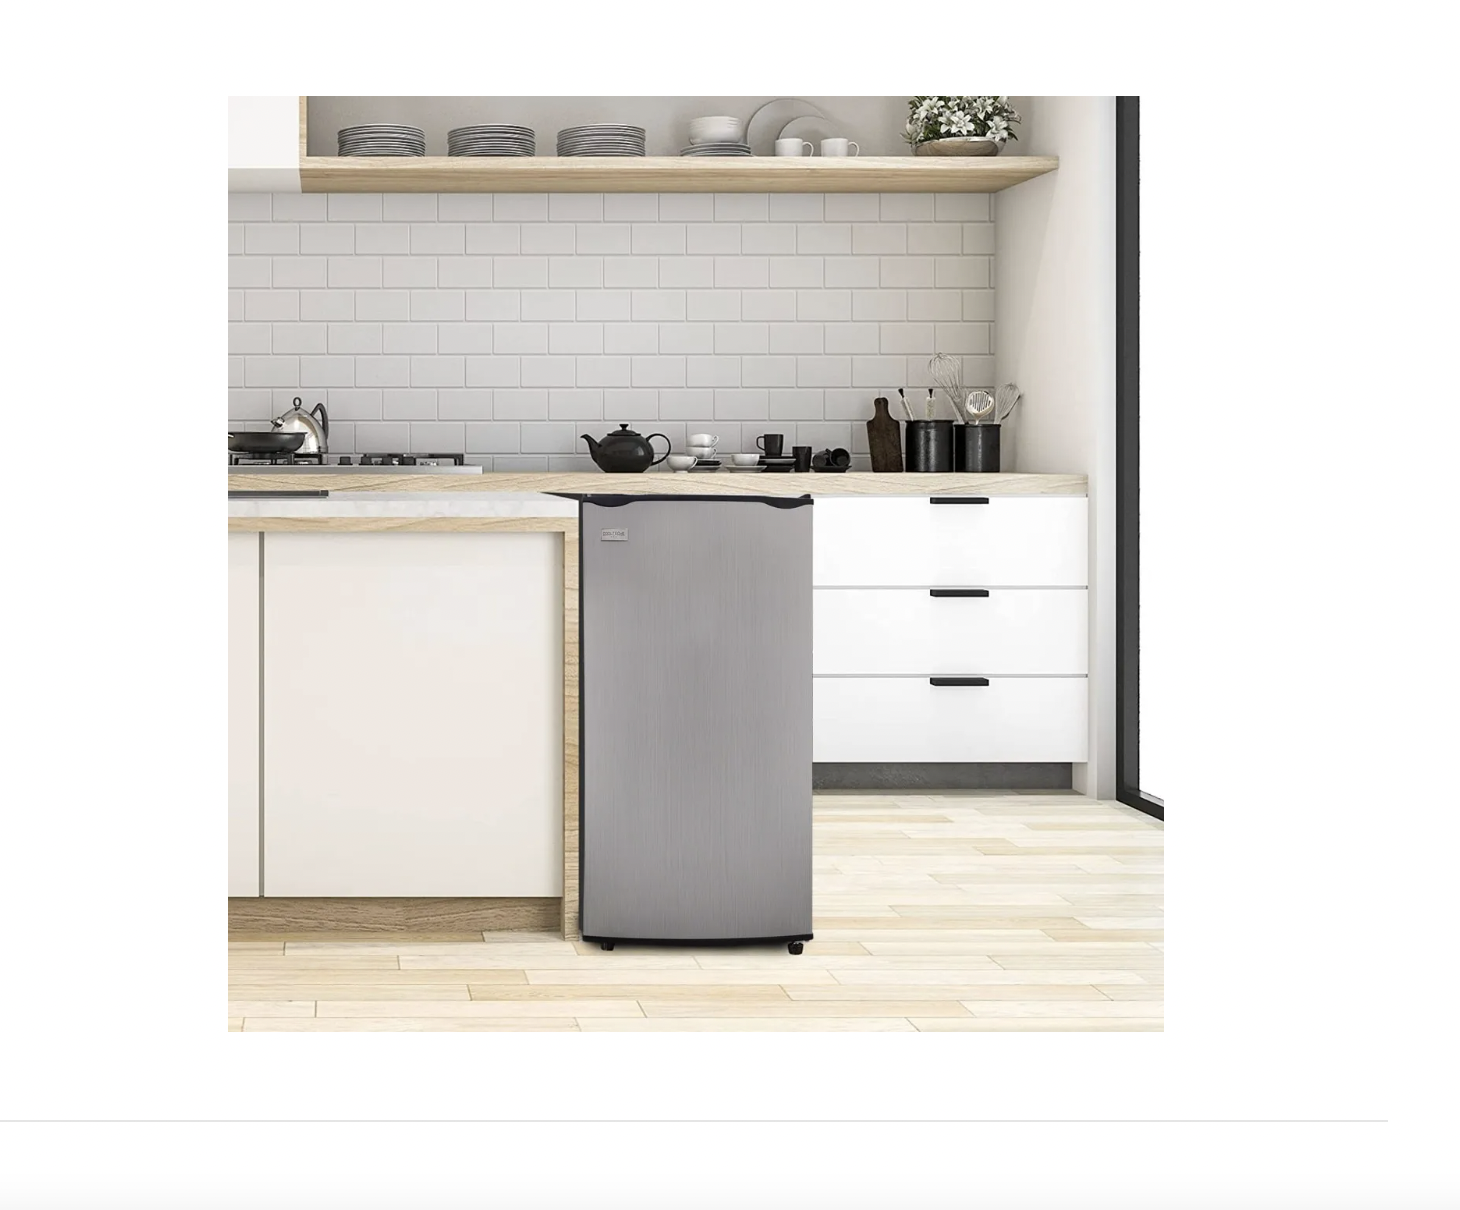 Mini refrigerador compacto de 3.2 pies cúbicos, refrigerador pequeño con  congelador para oficina en casa, dormitorio, bajo ruido, temperatura